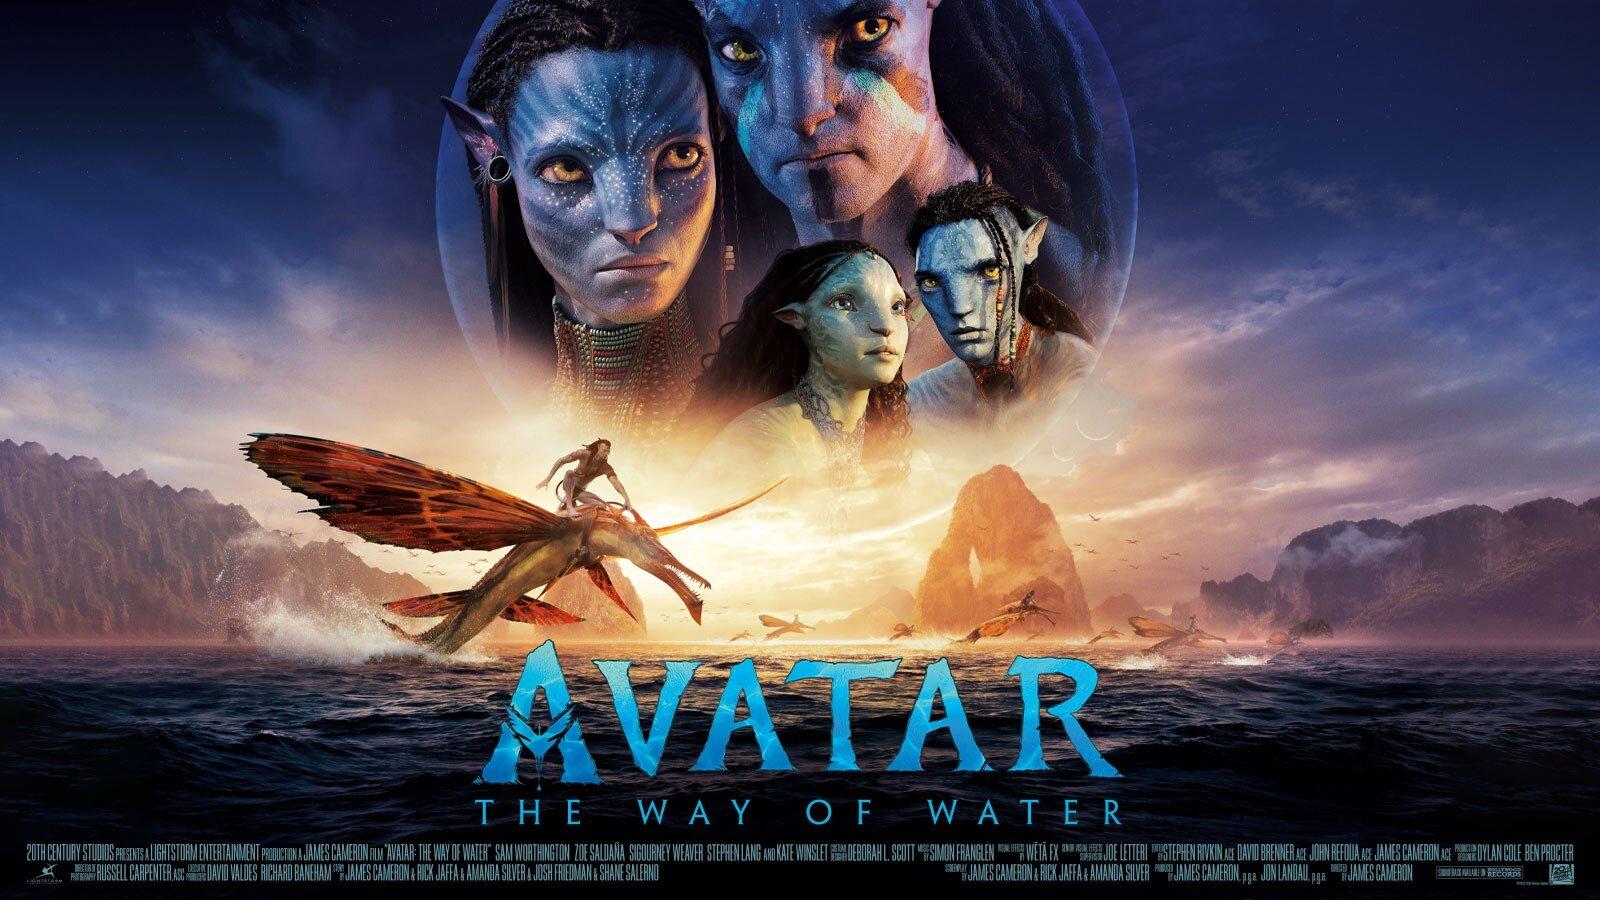 Toàn cầu: Avatar 2 không chỉ là một trong những bộ phim ăn khách trên thị trường phim của Mỹ, mà đã chinh phục được khán giả trên toàn cầu. Với tầm ảnh hưởng của mình, AVATAR 2 mang lại hy vọng cho ngành công nghiệp phim trên toàn thế giới về những tác phẩm điện ảnh đẳng cấp và đầy ý nghĩa.